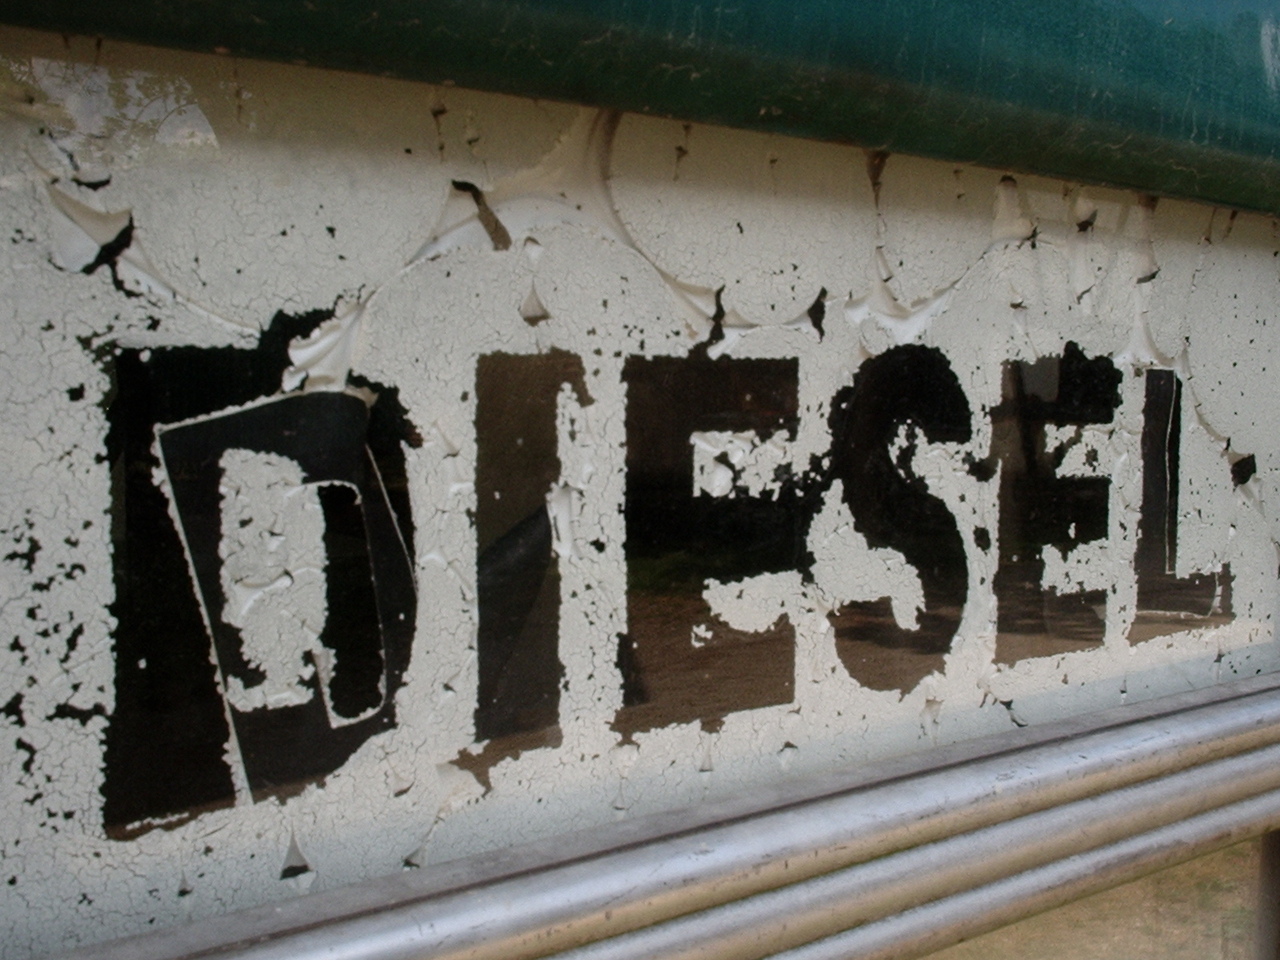 Palm oil diesel factories in Europe